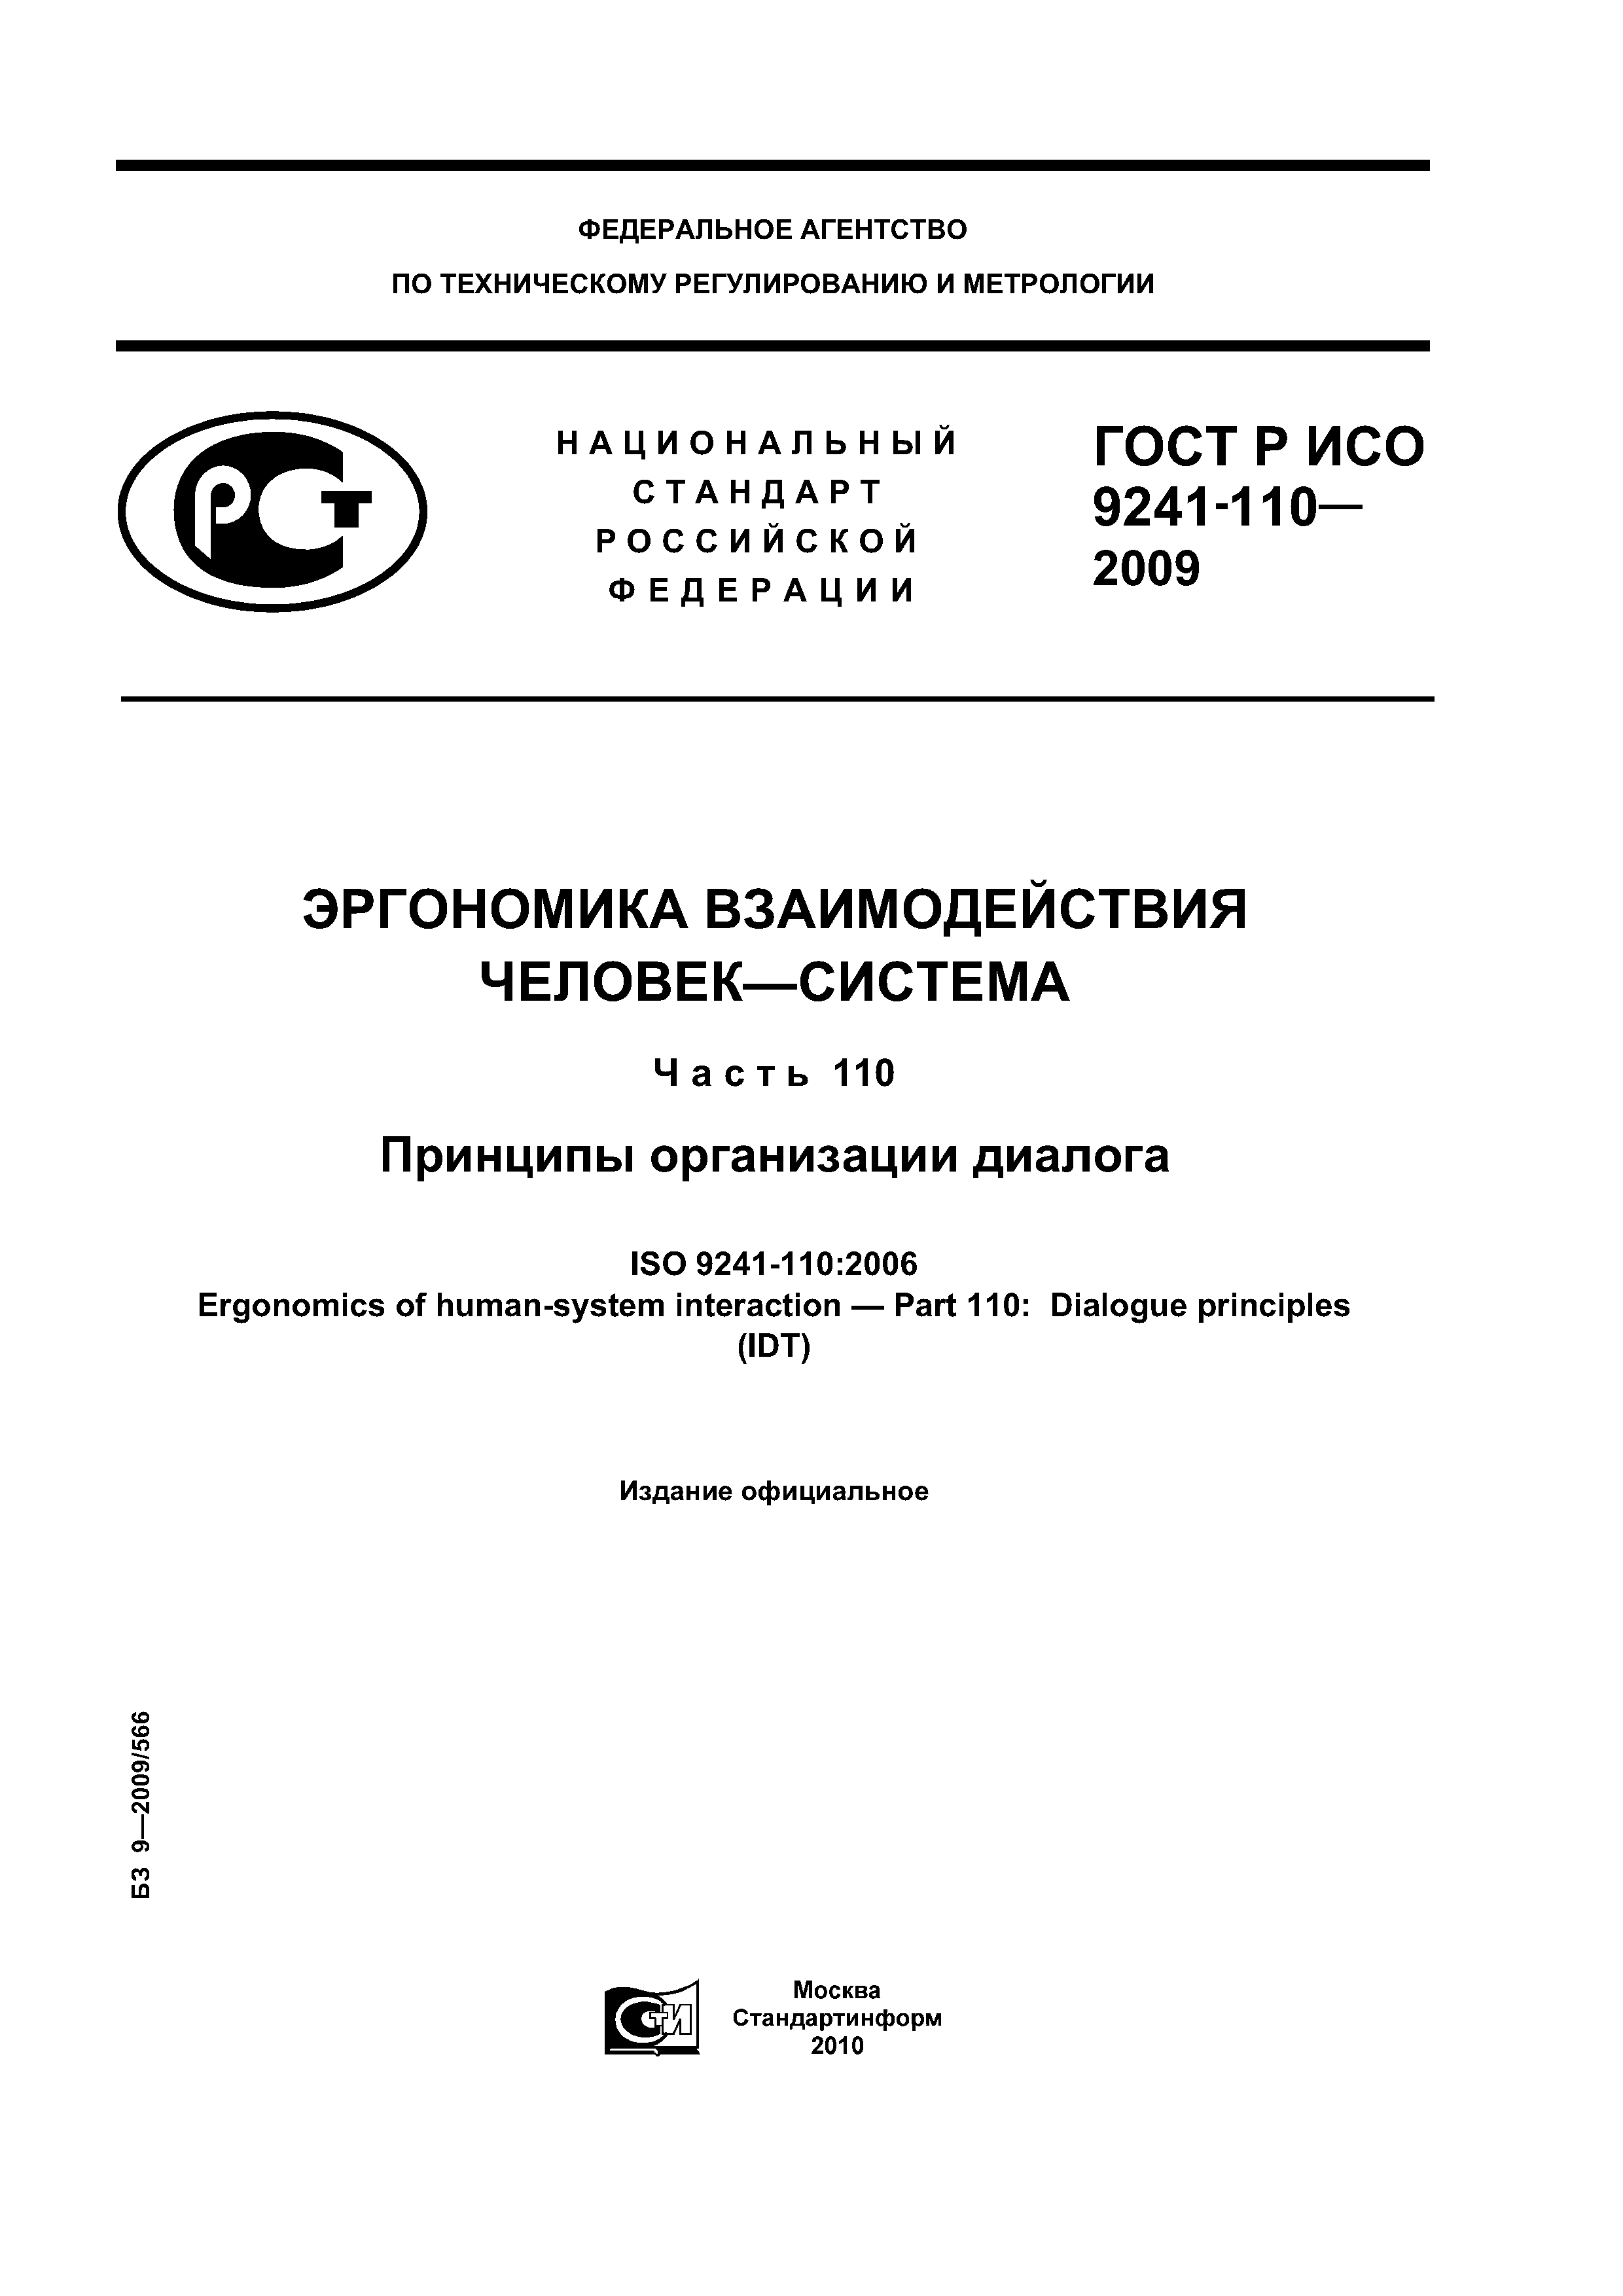 ГОСТ Р ИСО 9241-110-2009